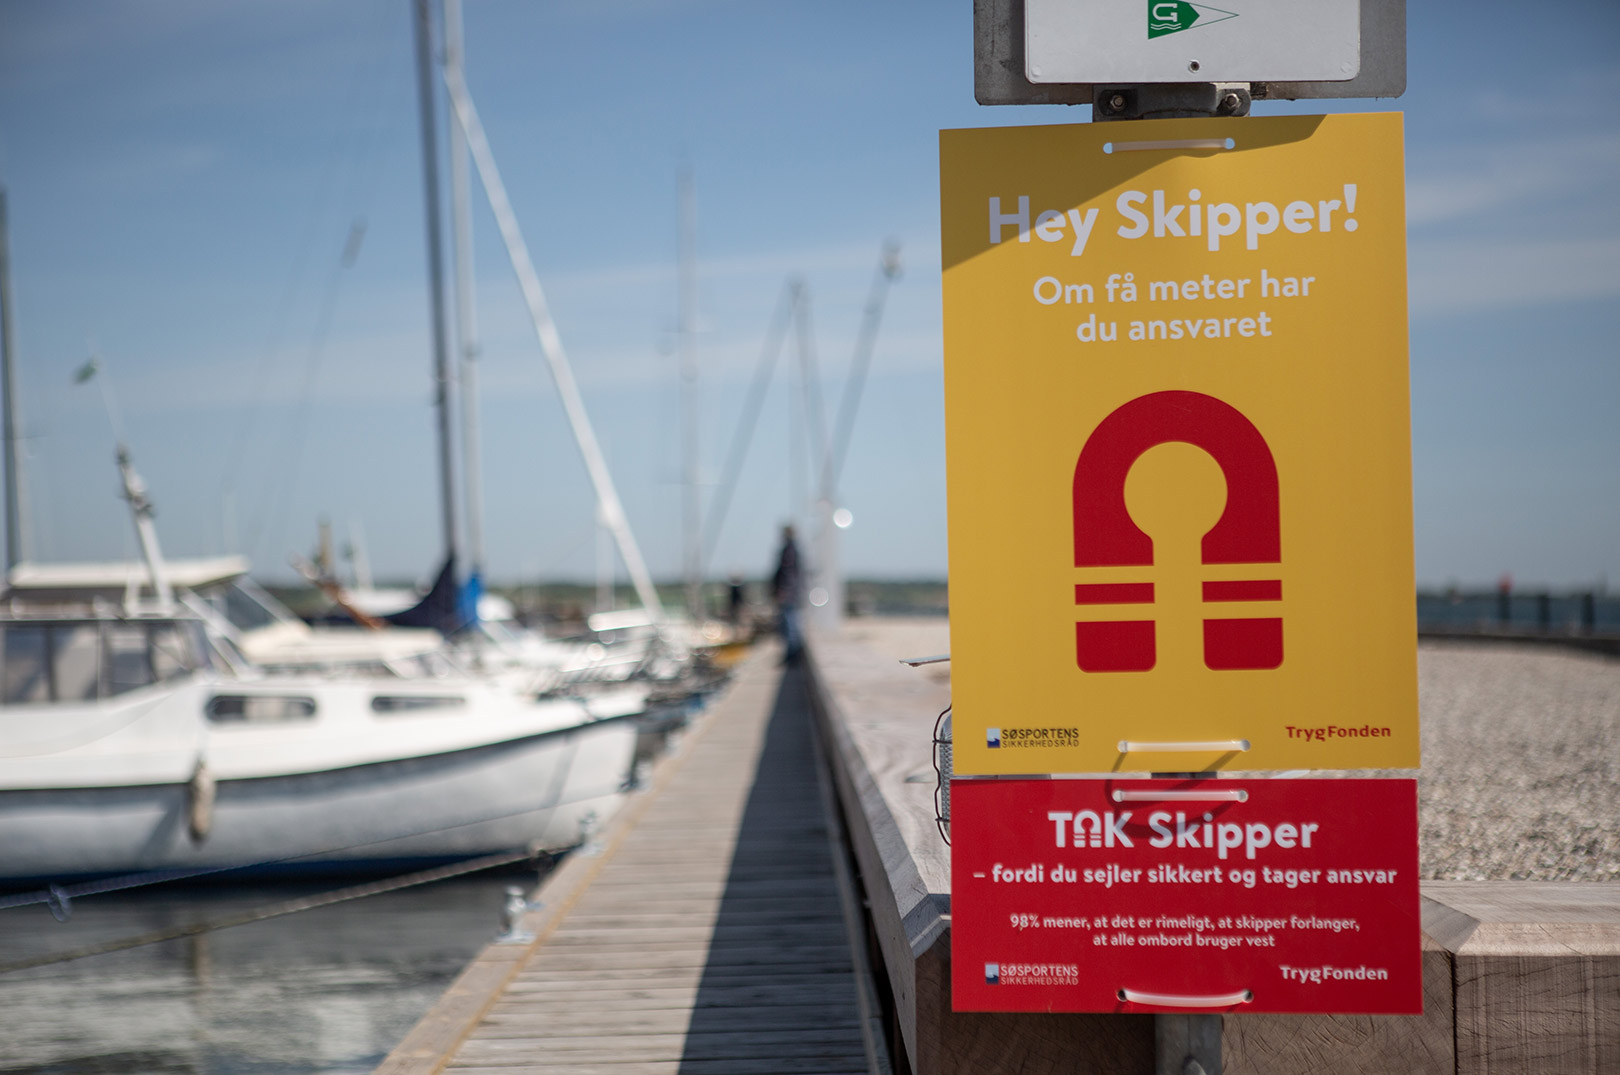 Tag skipperansvar og brug redningsvest er blot to af budskaberne i SejlSikkert kampagnen 2020.